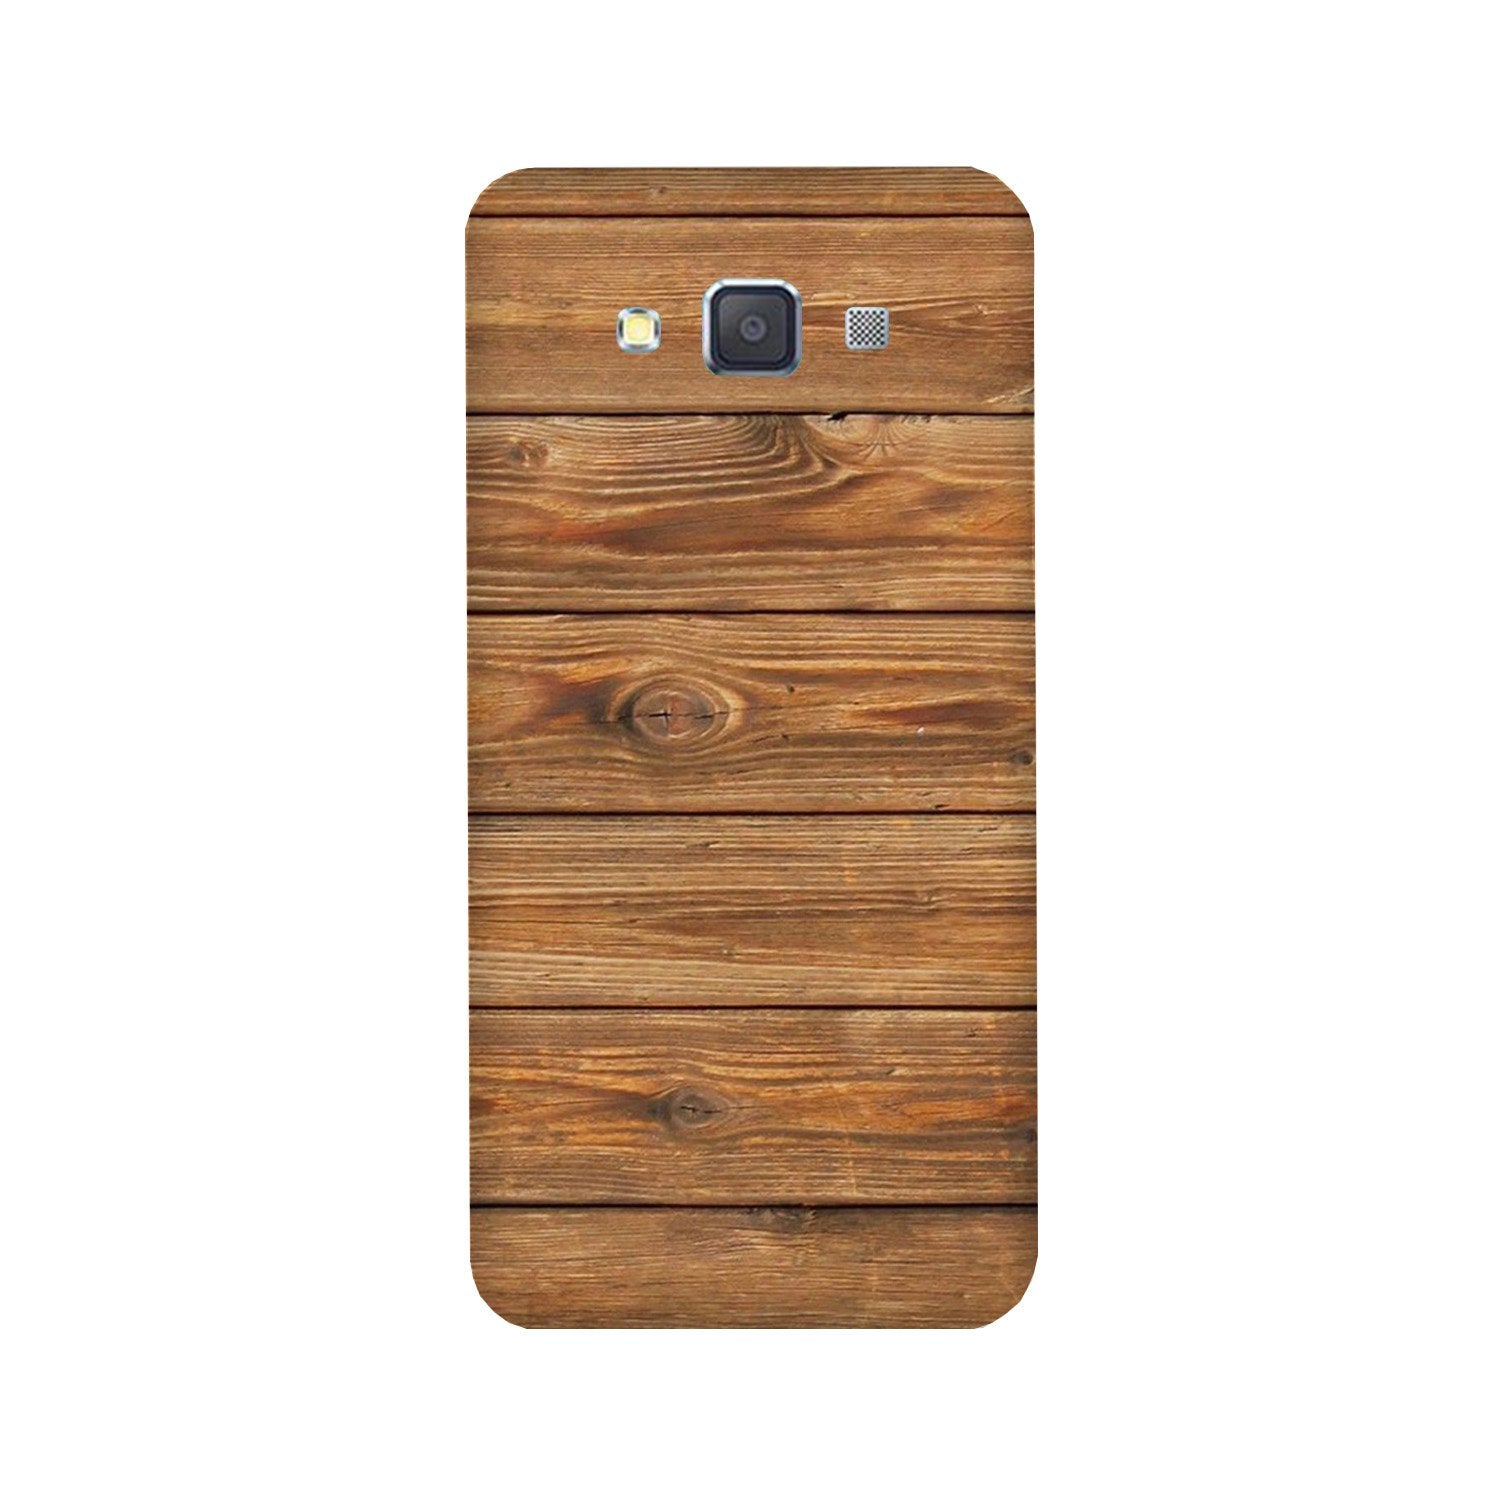 Wooden Look Case for Galaxy E5  (Design - 113)